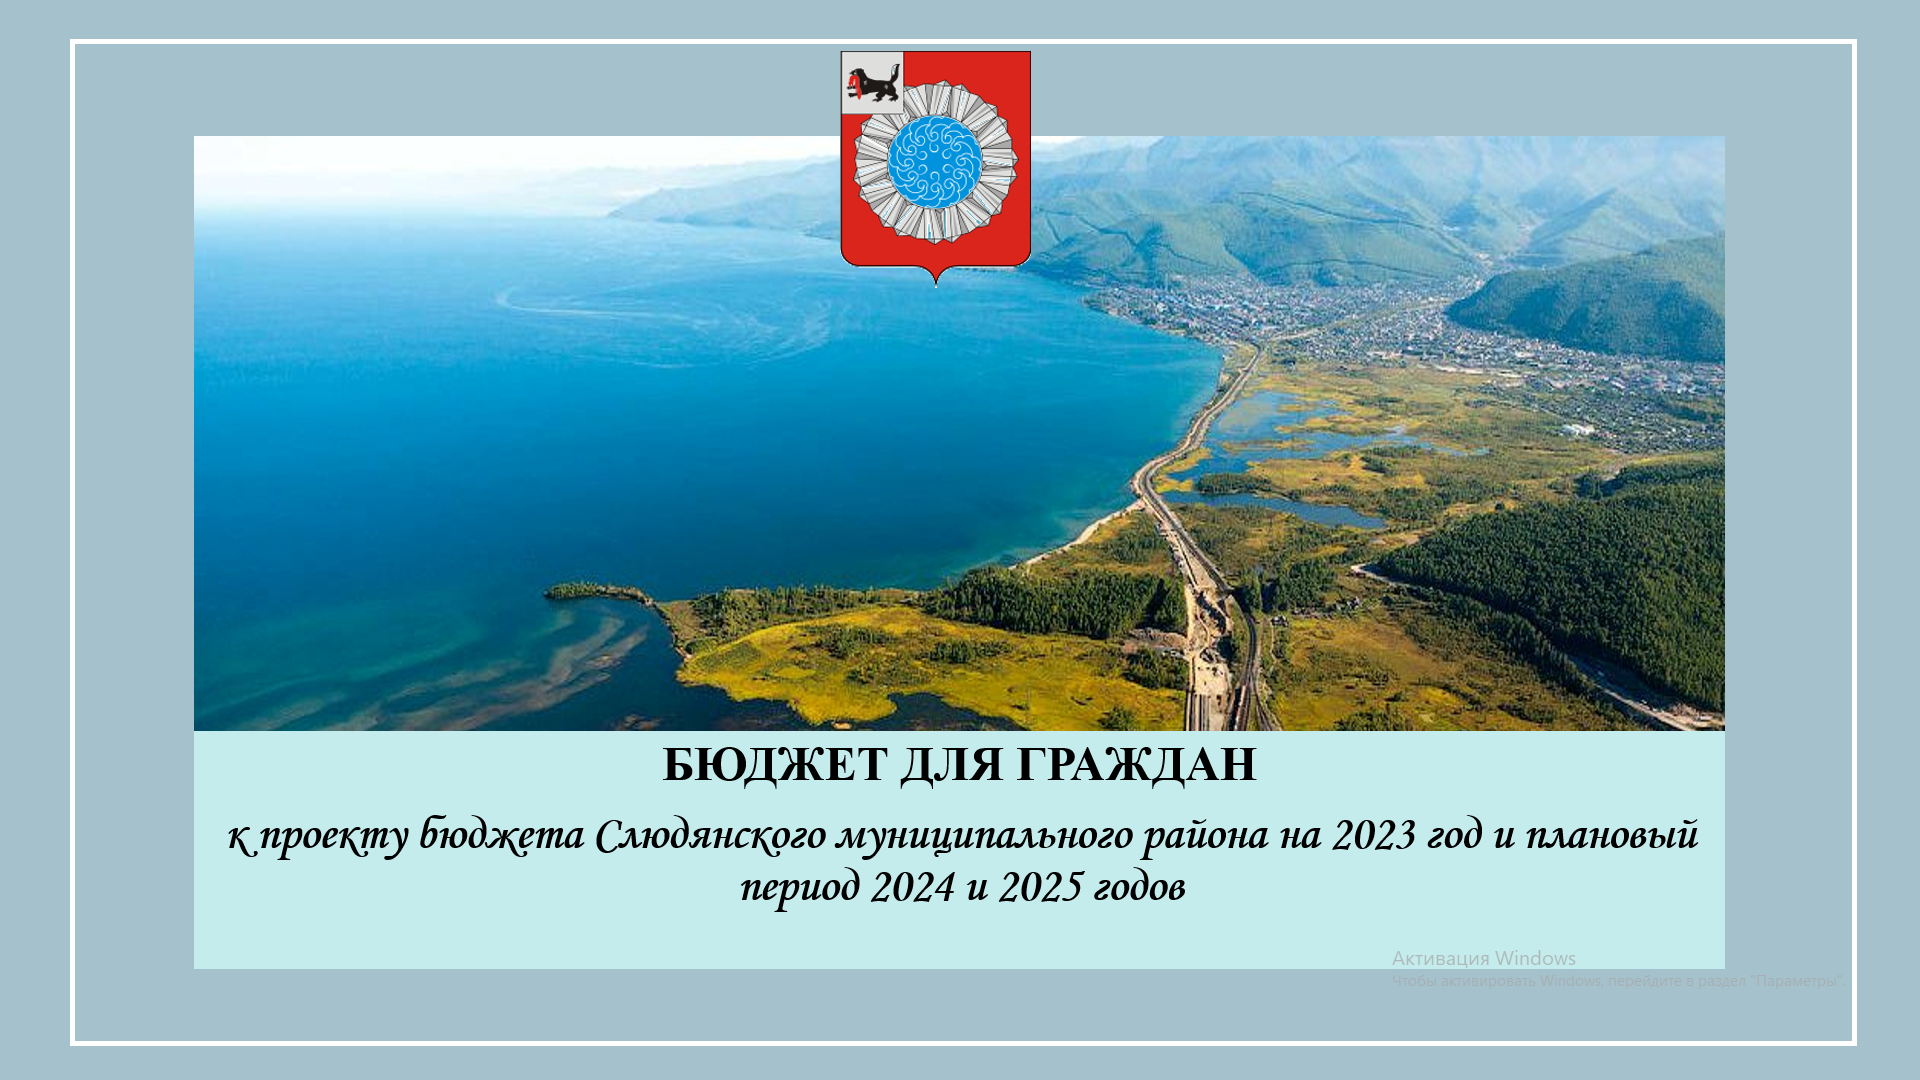 К проекту бюджета Слюдянского муниципального района на 2023 и плановый период 2024 и 2025 годов